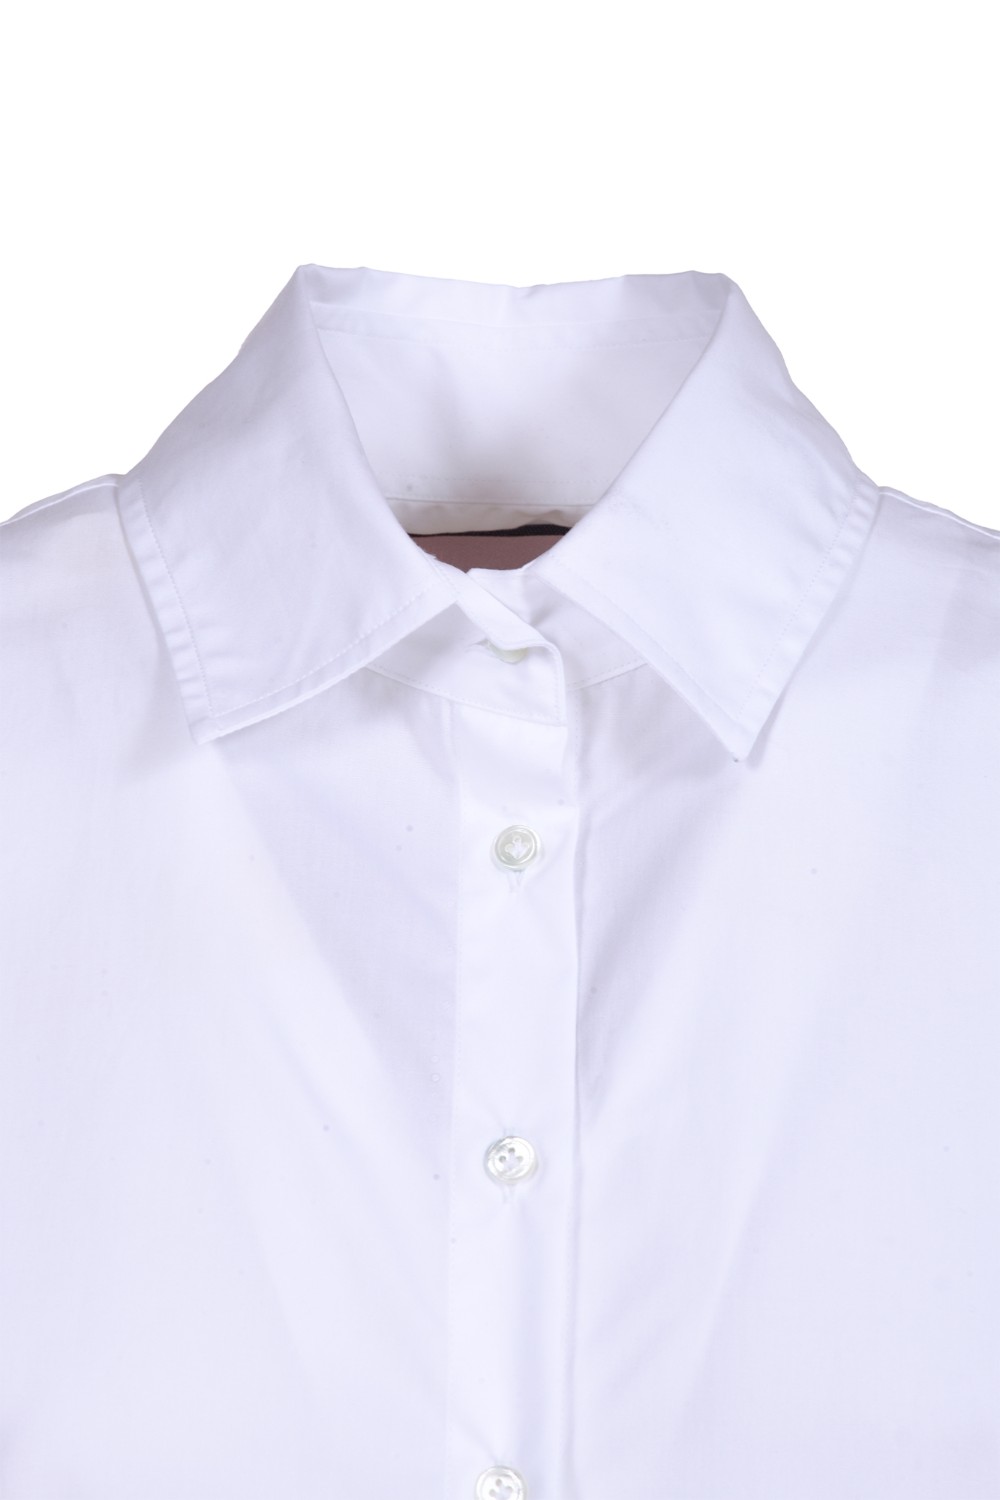 shop BAGUTTA  Camicia: Bagutta camicia in cotone.
Maniche lunghe.
Regular fit.
Motivo geometrico posteriore.
Composizione: 100% cotone.
Fabbricato in Albania.. SUMISY 00170-001 number 2680555